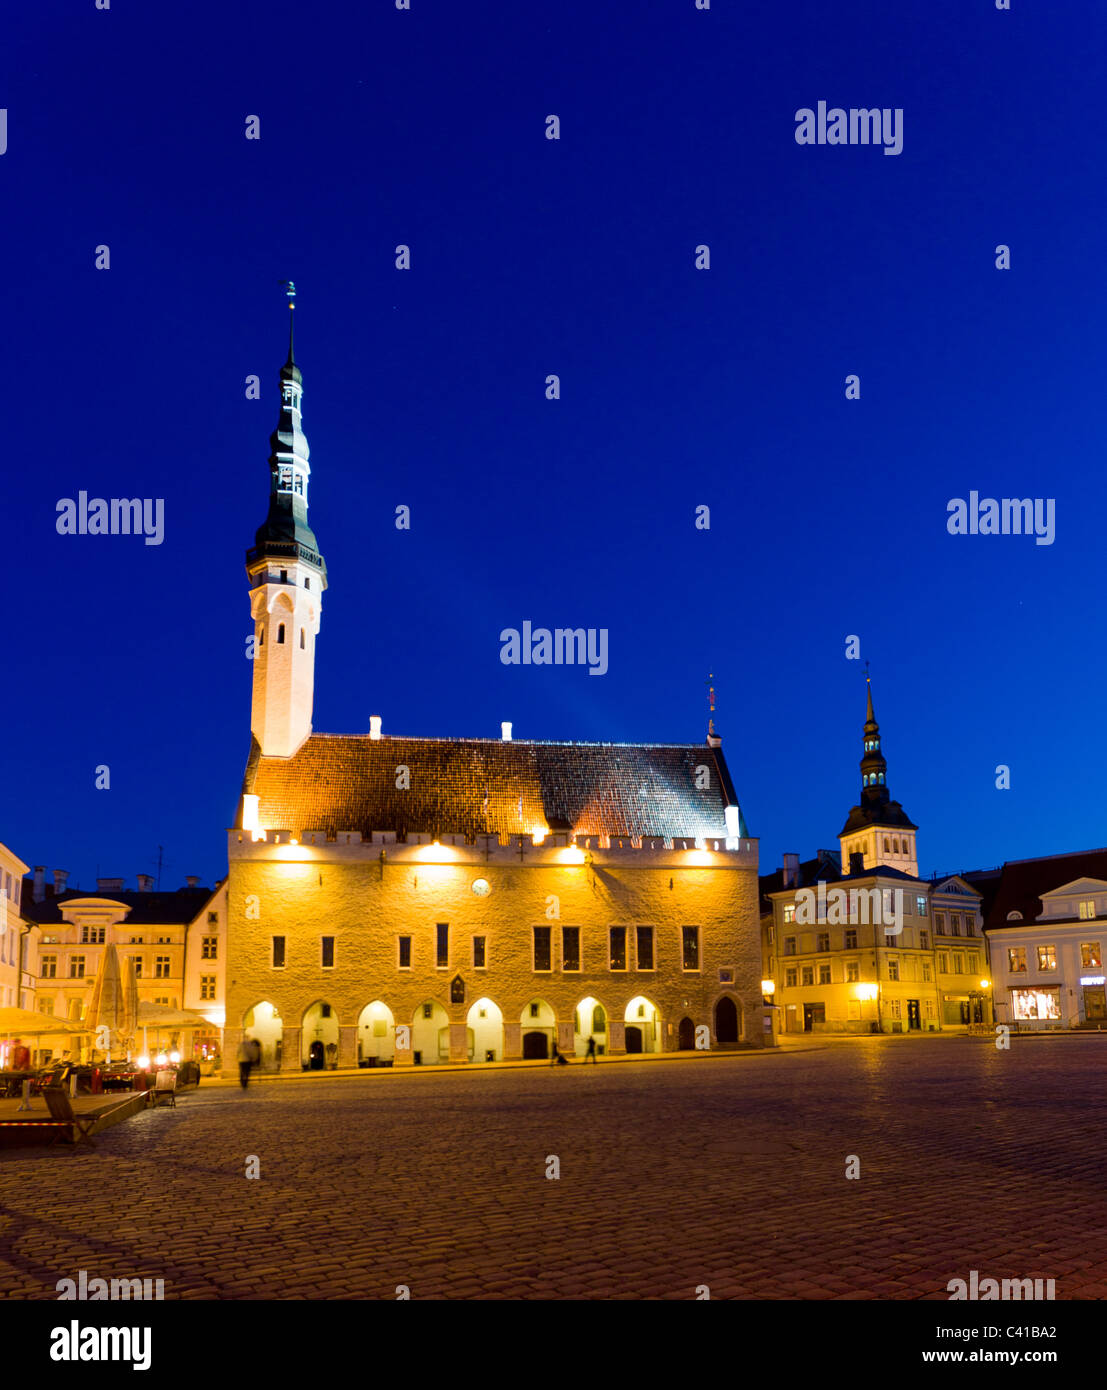 Tallinn in Estland - Rathaus in Raekoja Square bei Nacht Stockfoto